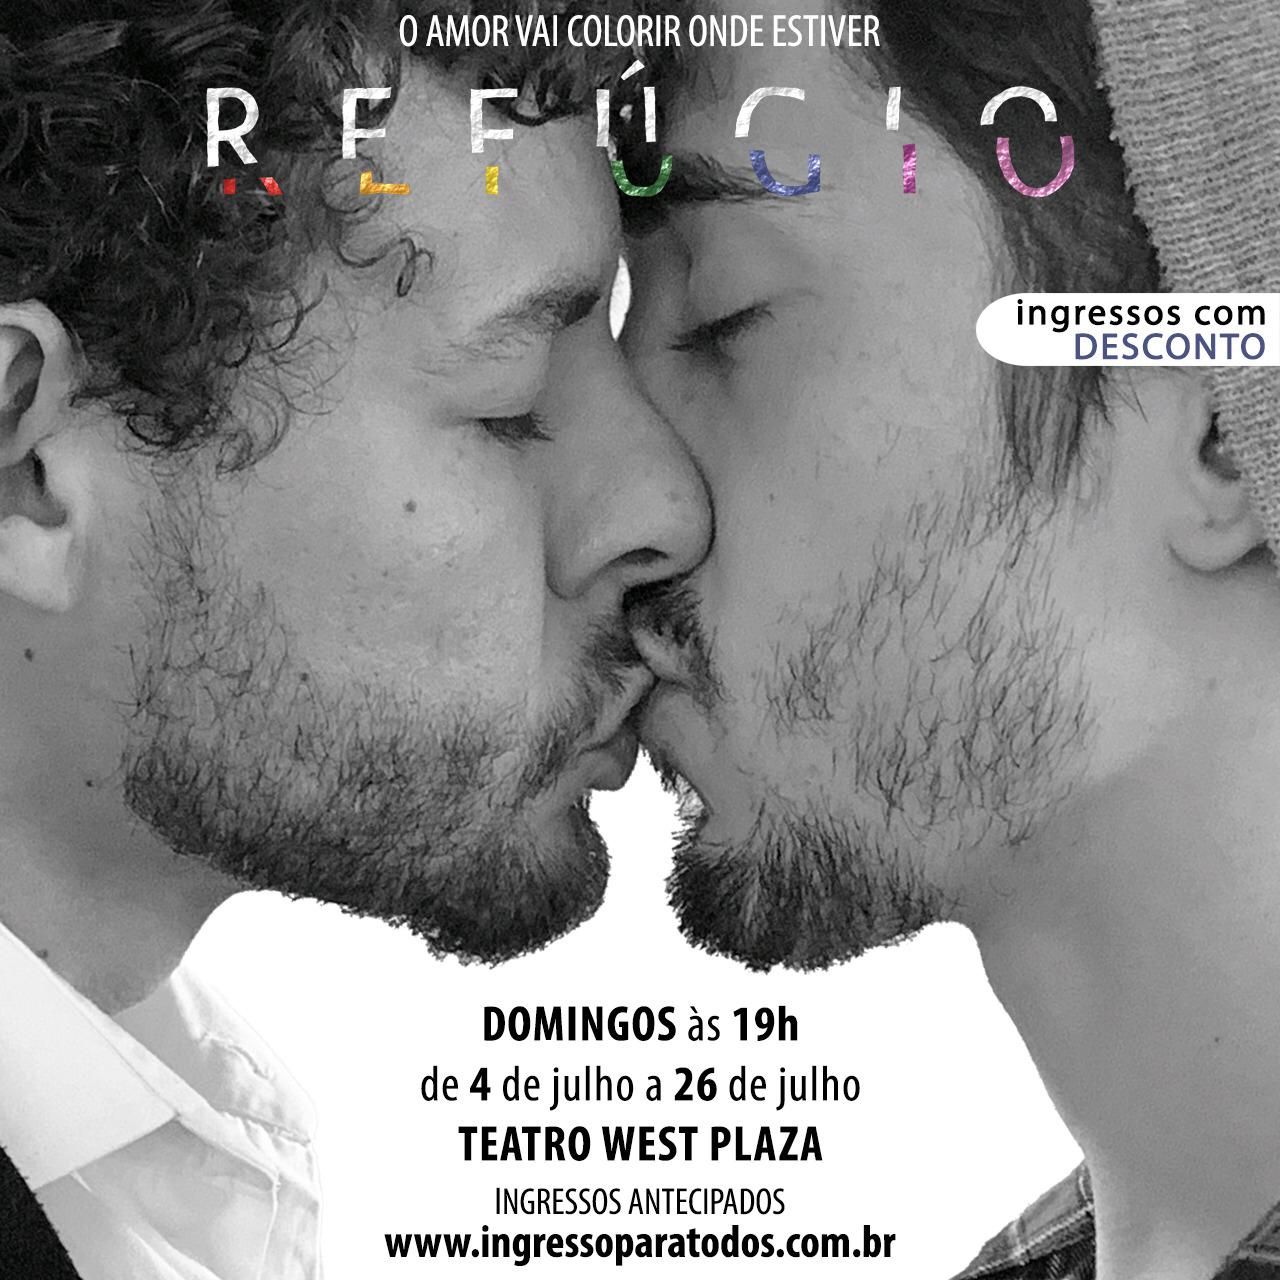 Comédia romântica, com temática LGBTQIA+, reestreia em SP